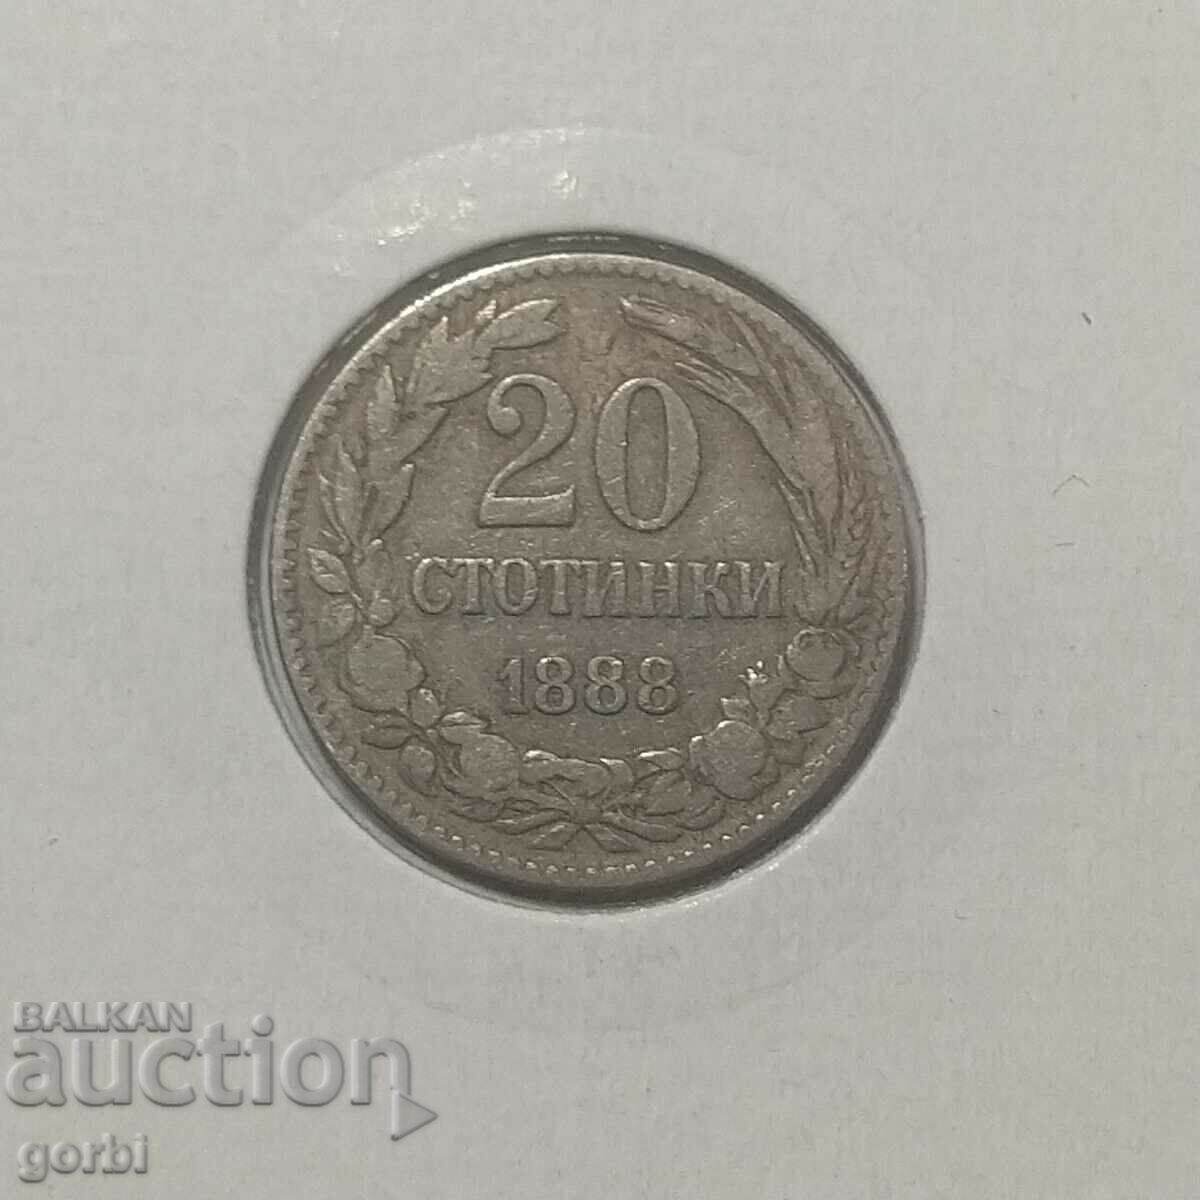 20 стотинки 1888 г.